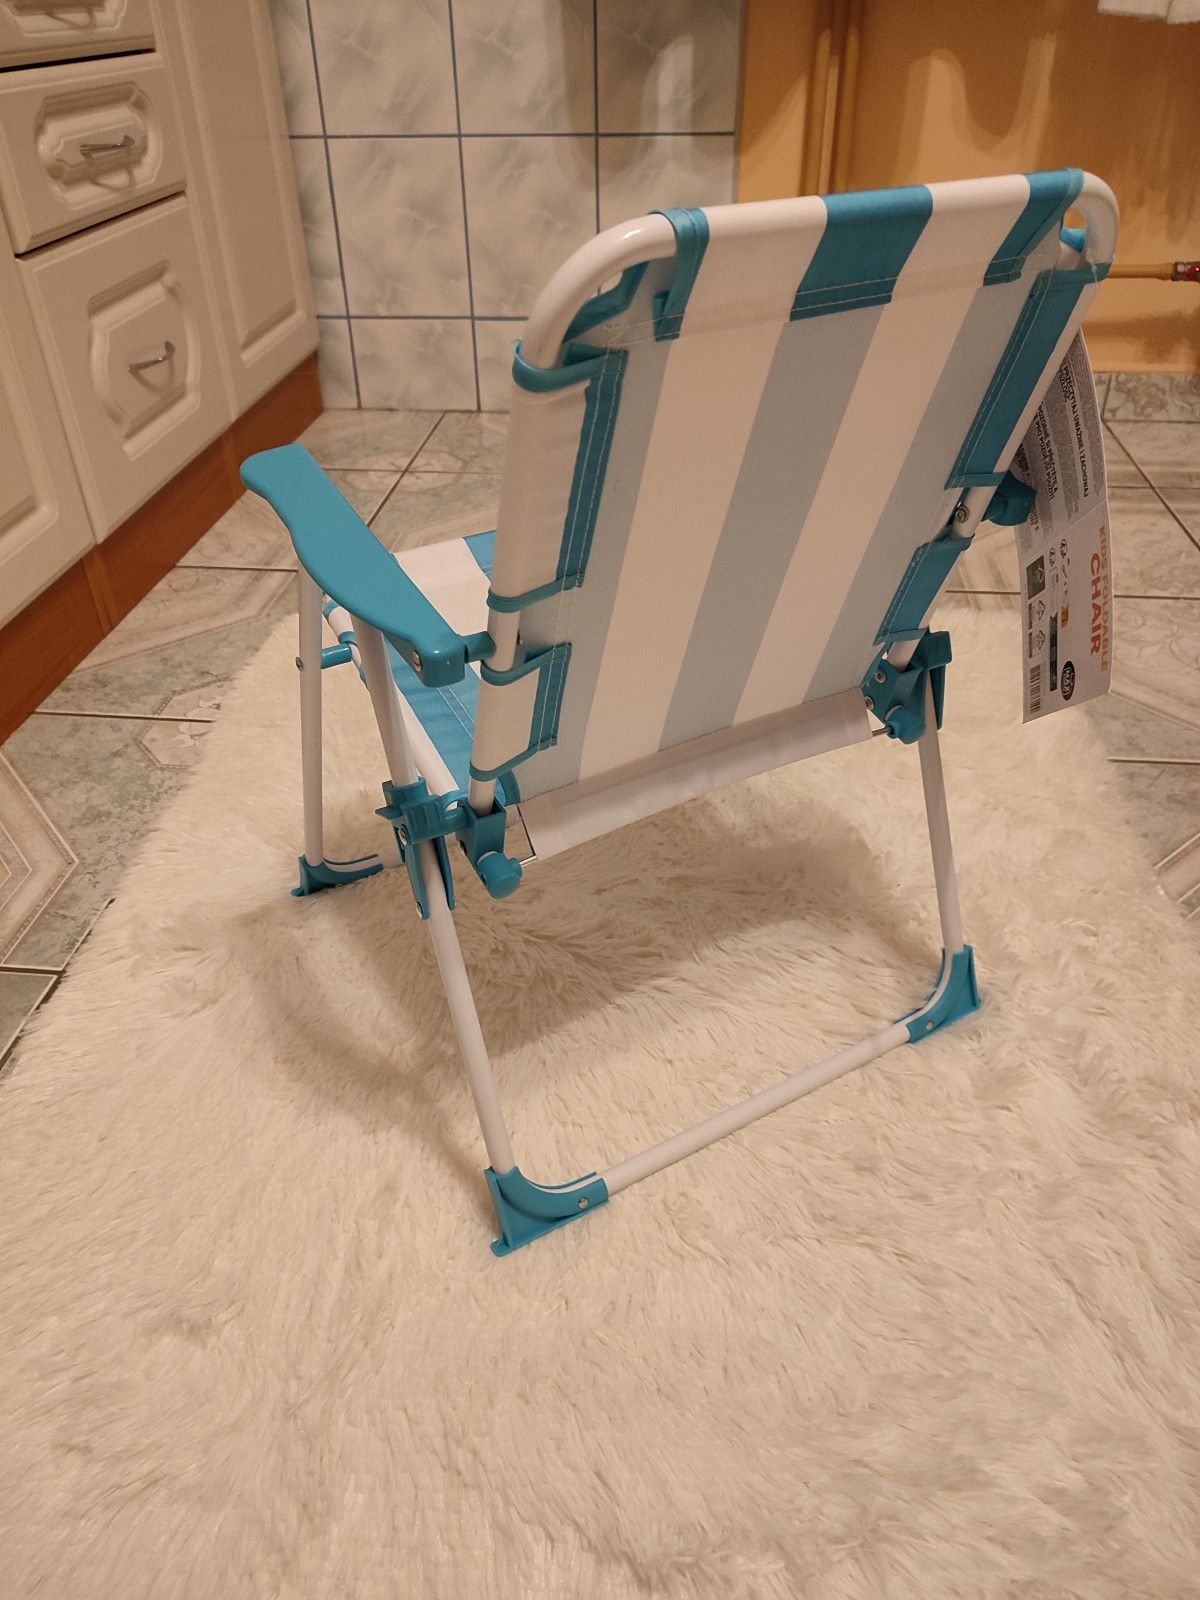 Nowe niebieskie krzesełko składane dla dziecka